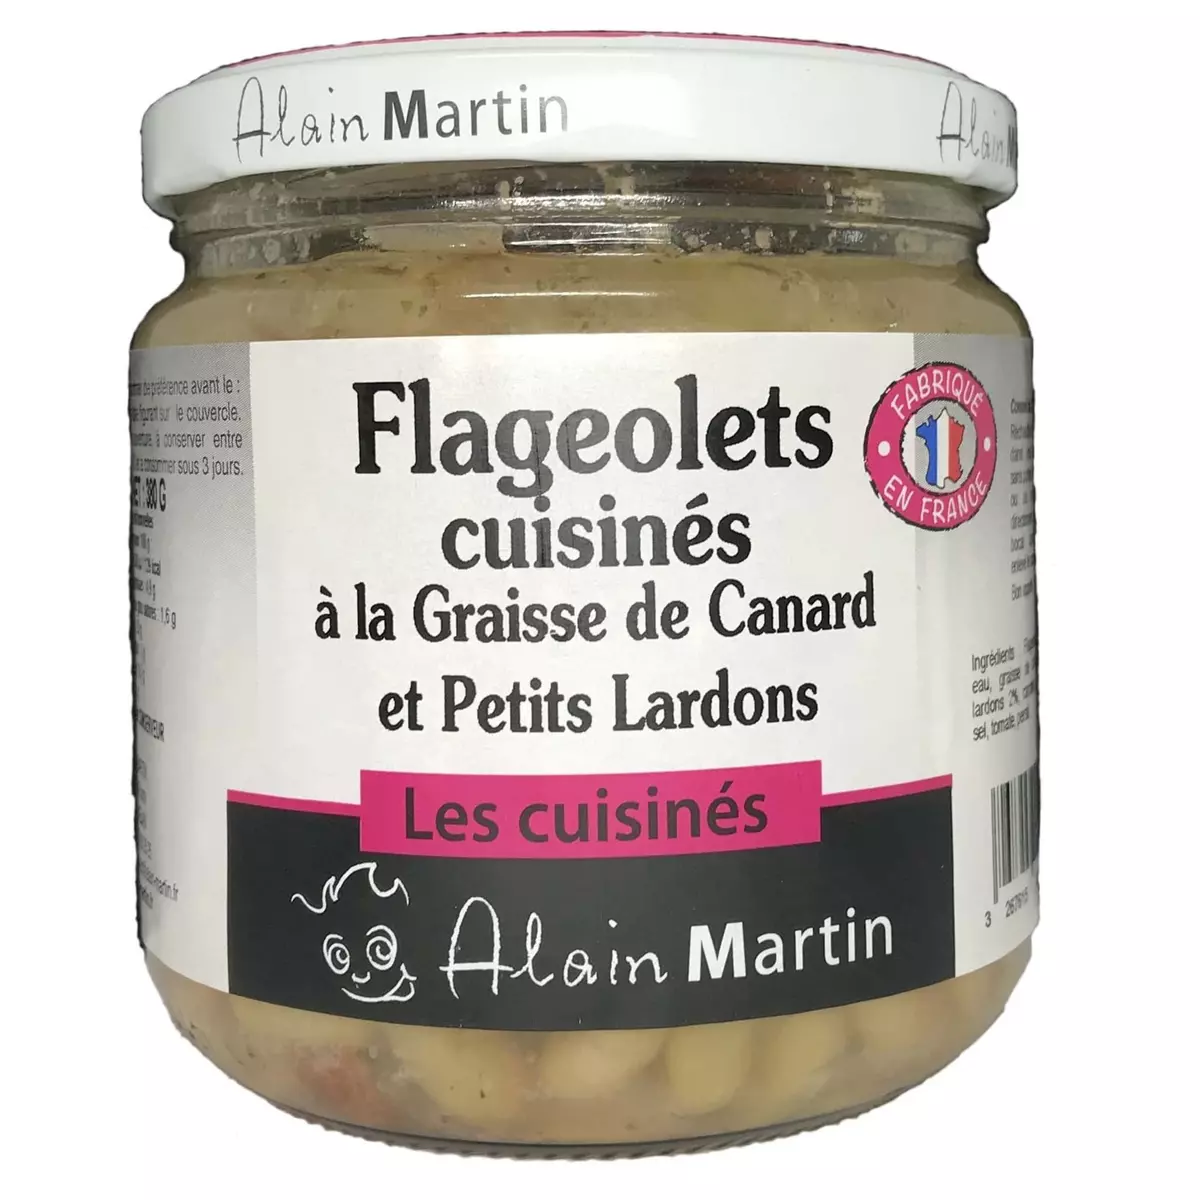 ALAIN MARTIN Flageolets cuisinés à la graisse de canard et petits lardons Les cuisinés 380g